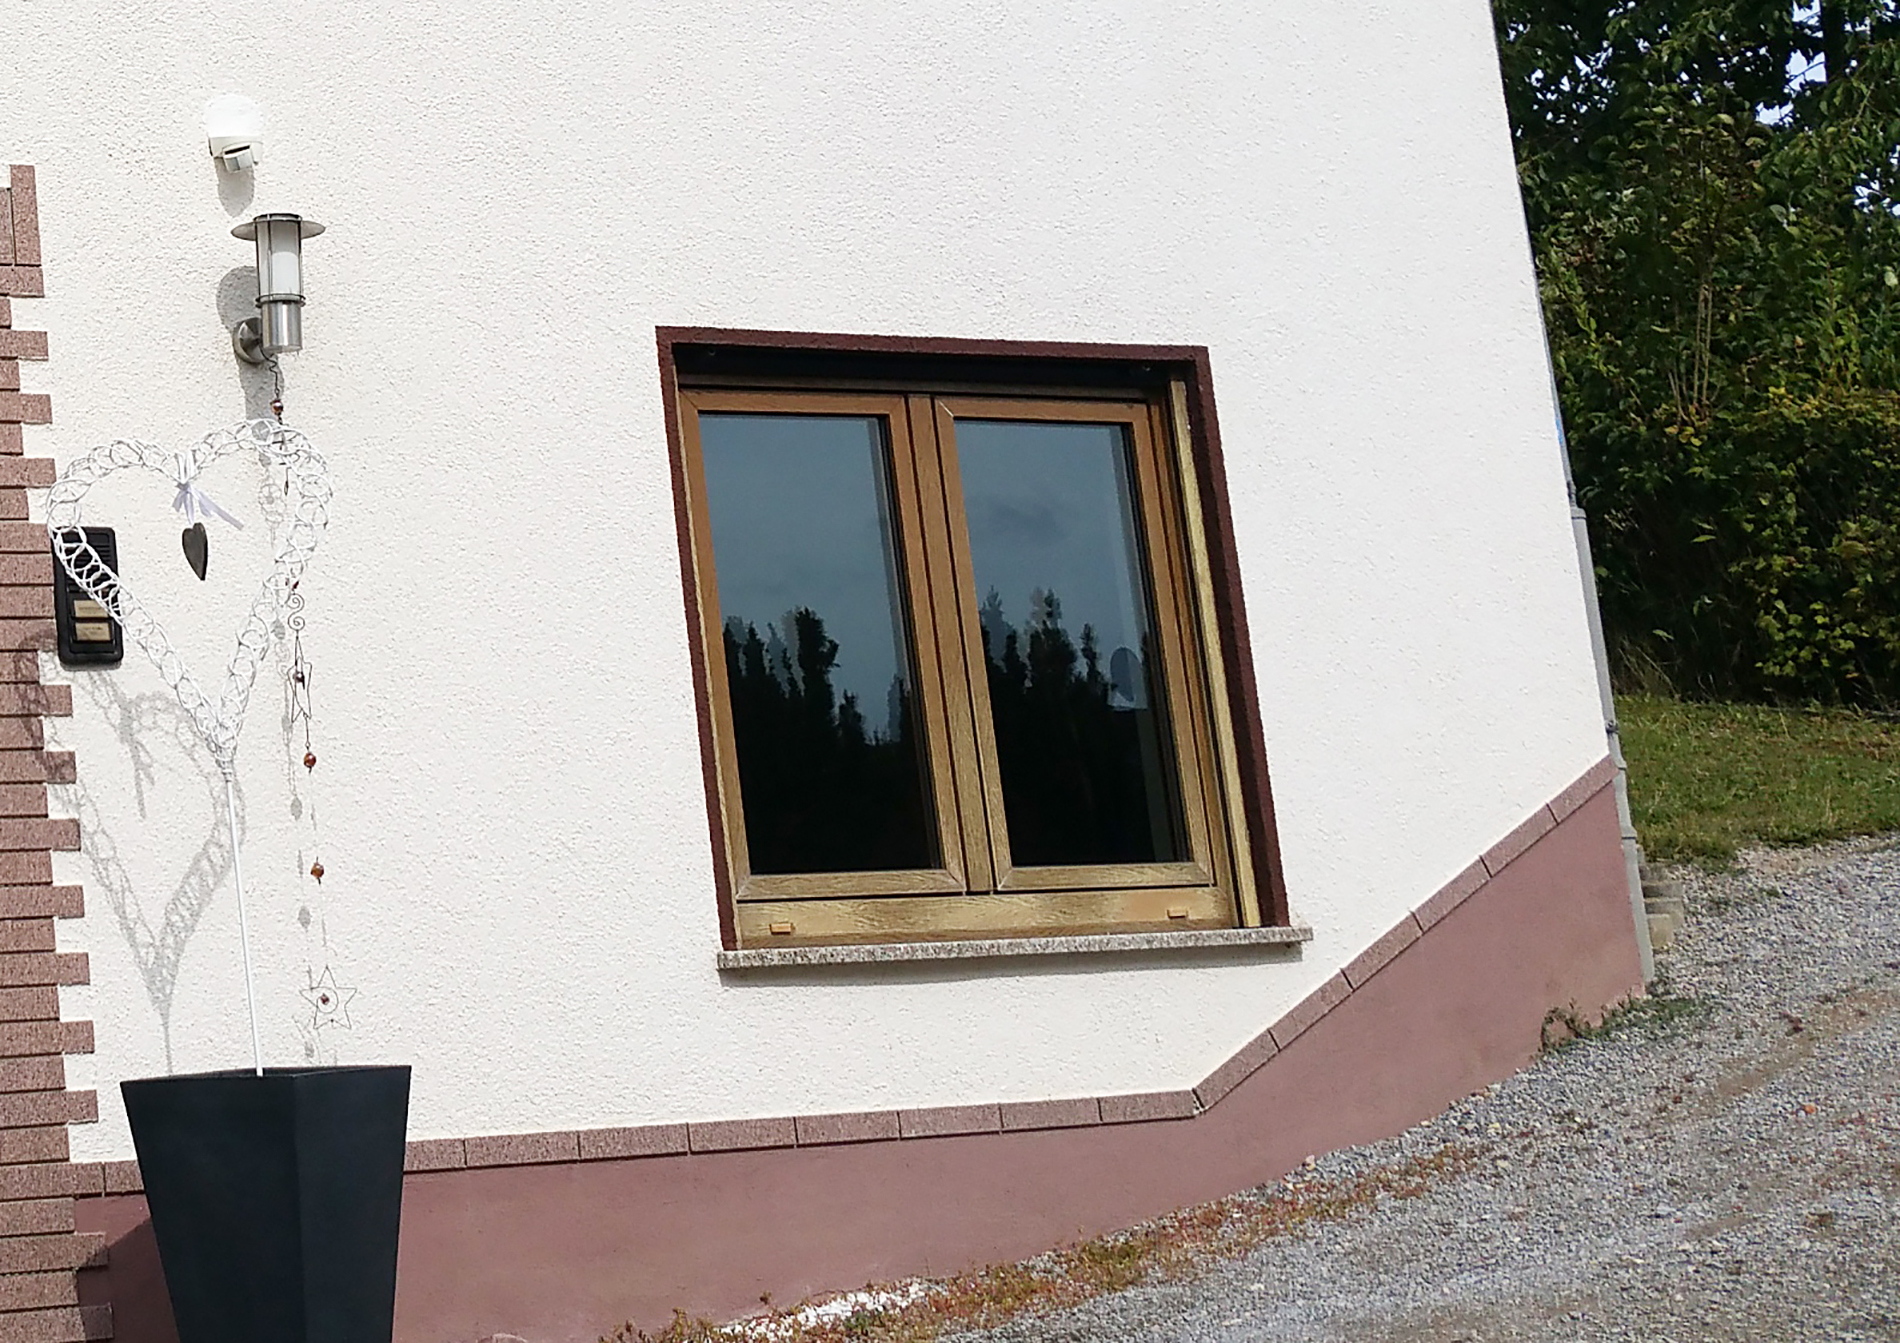 Fensterrahmenfolie für einfache Design-Wechsel